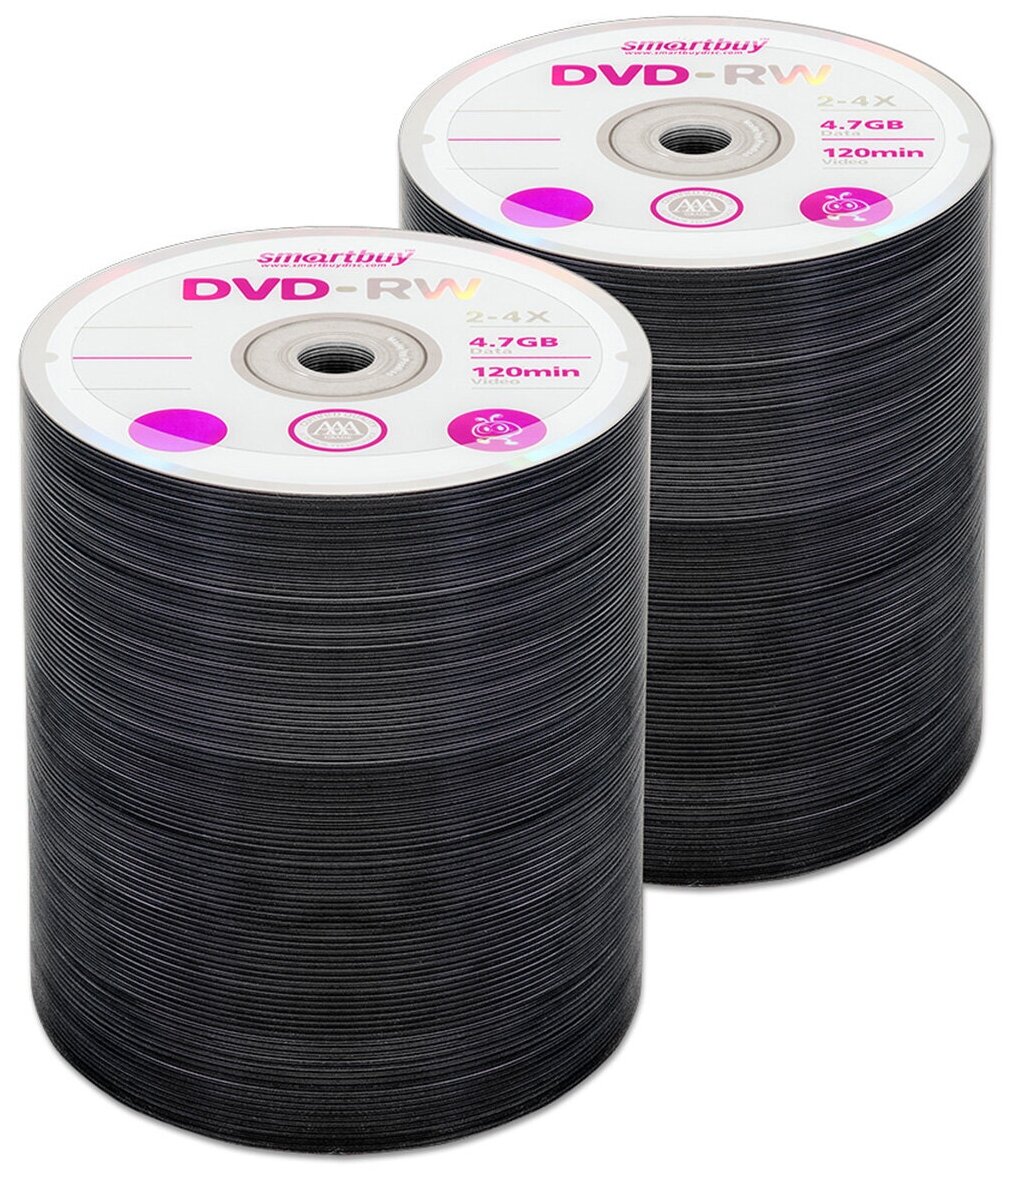 Диск SmartBuy DVD-RW 4,7Gb 4x bulk, упаковка 50 шт.